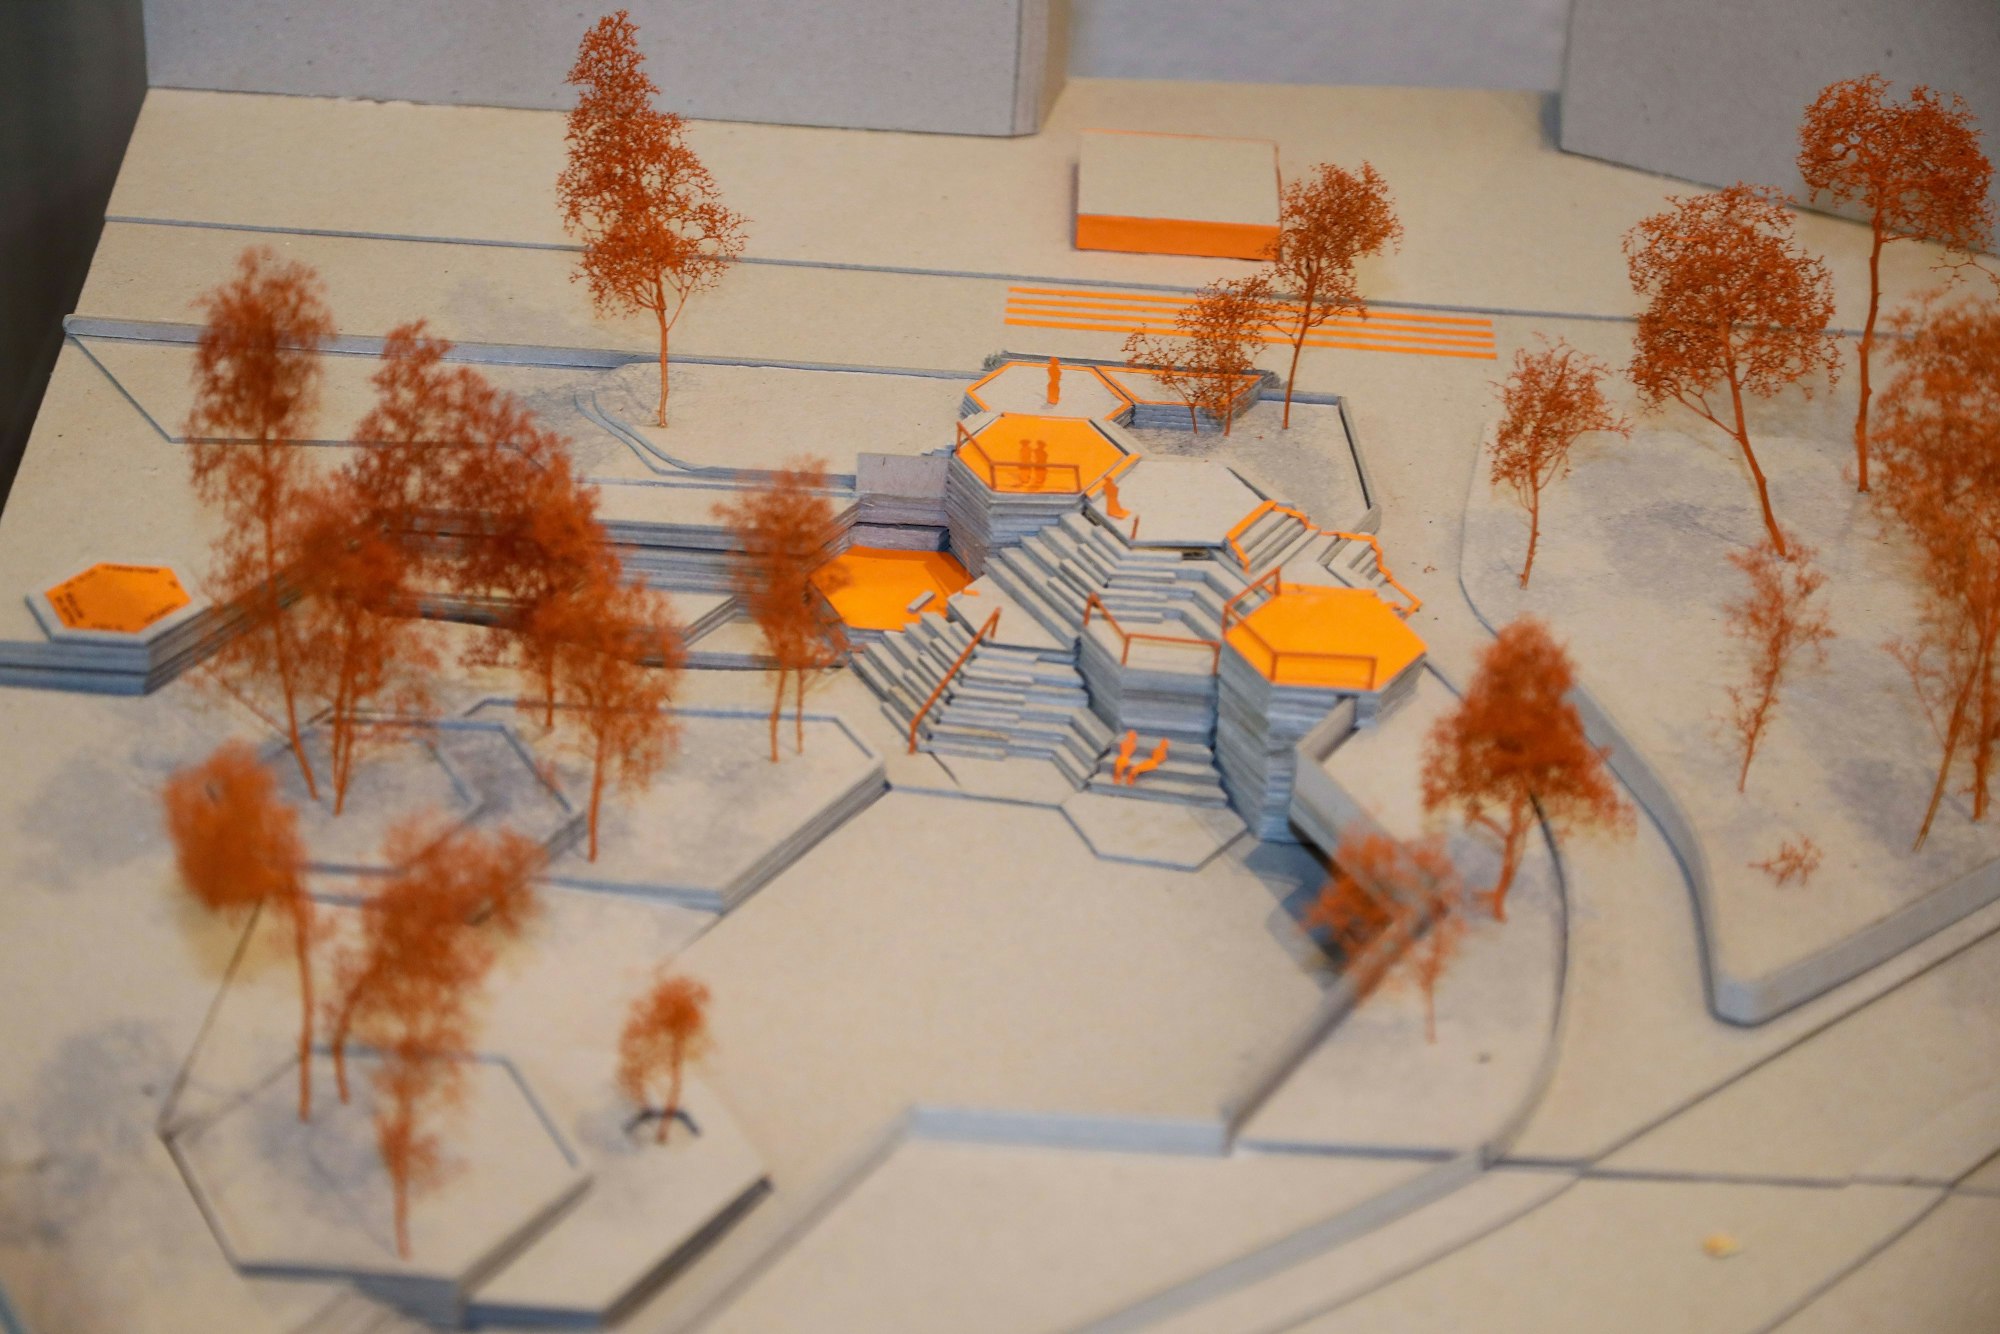 Entwurf der Umgestaltung des Ebertplatzes. Eine Freitreppe soll vom Straßenübergang runter zum Ebertplatz führen.